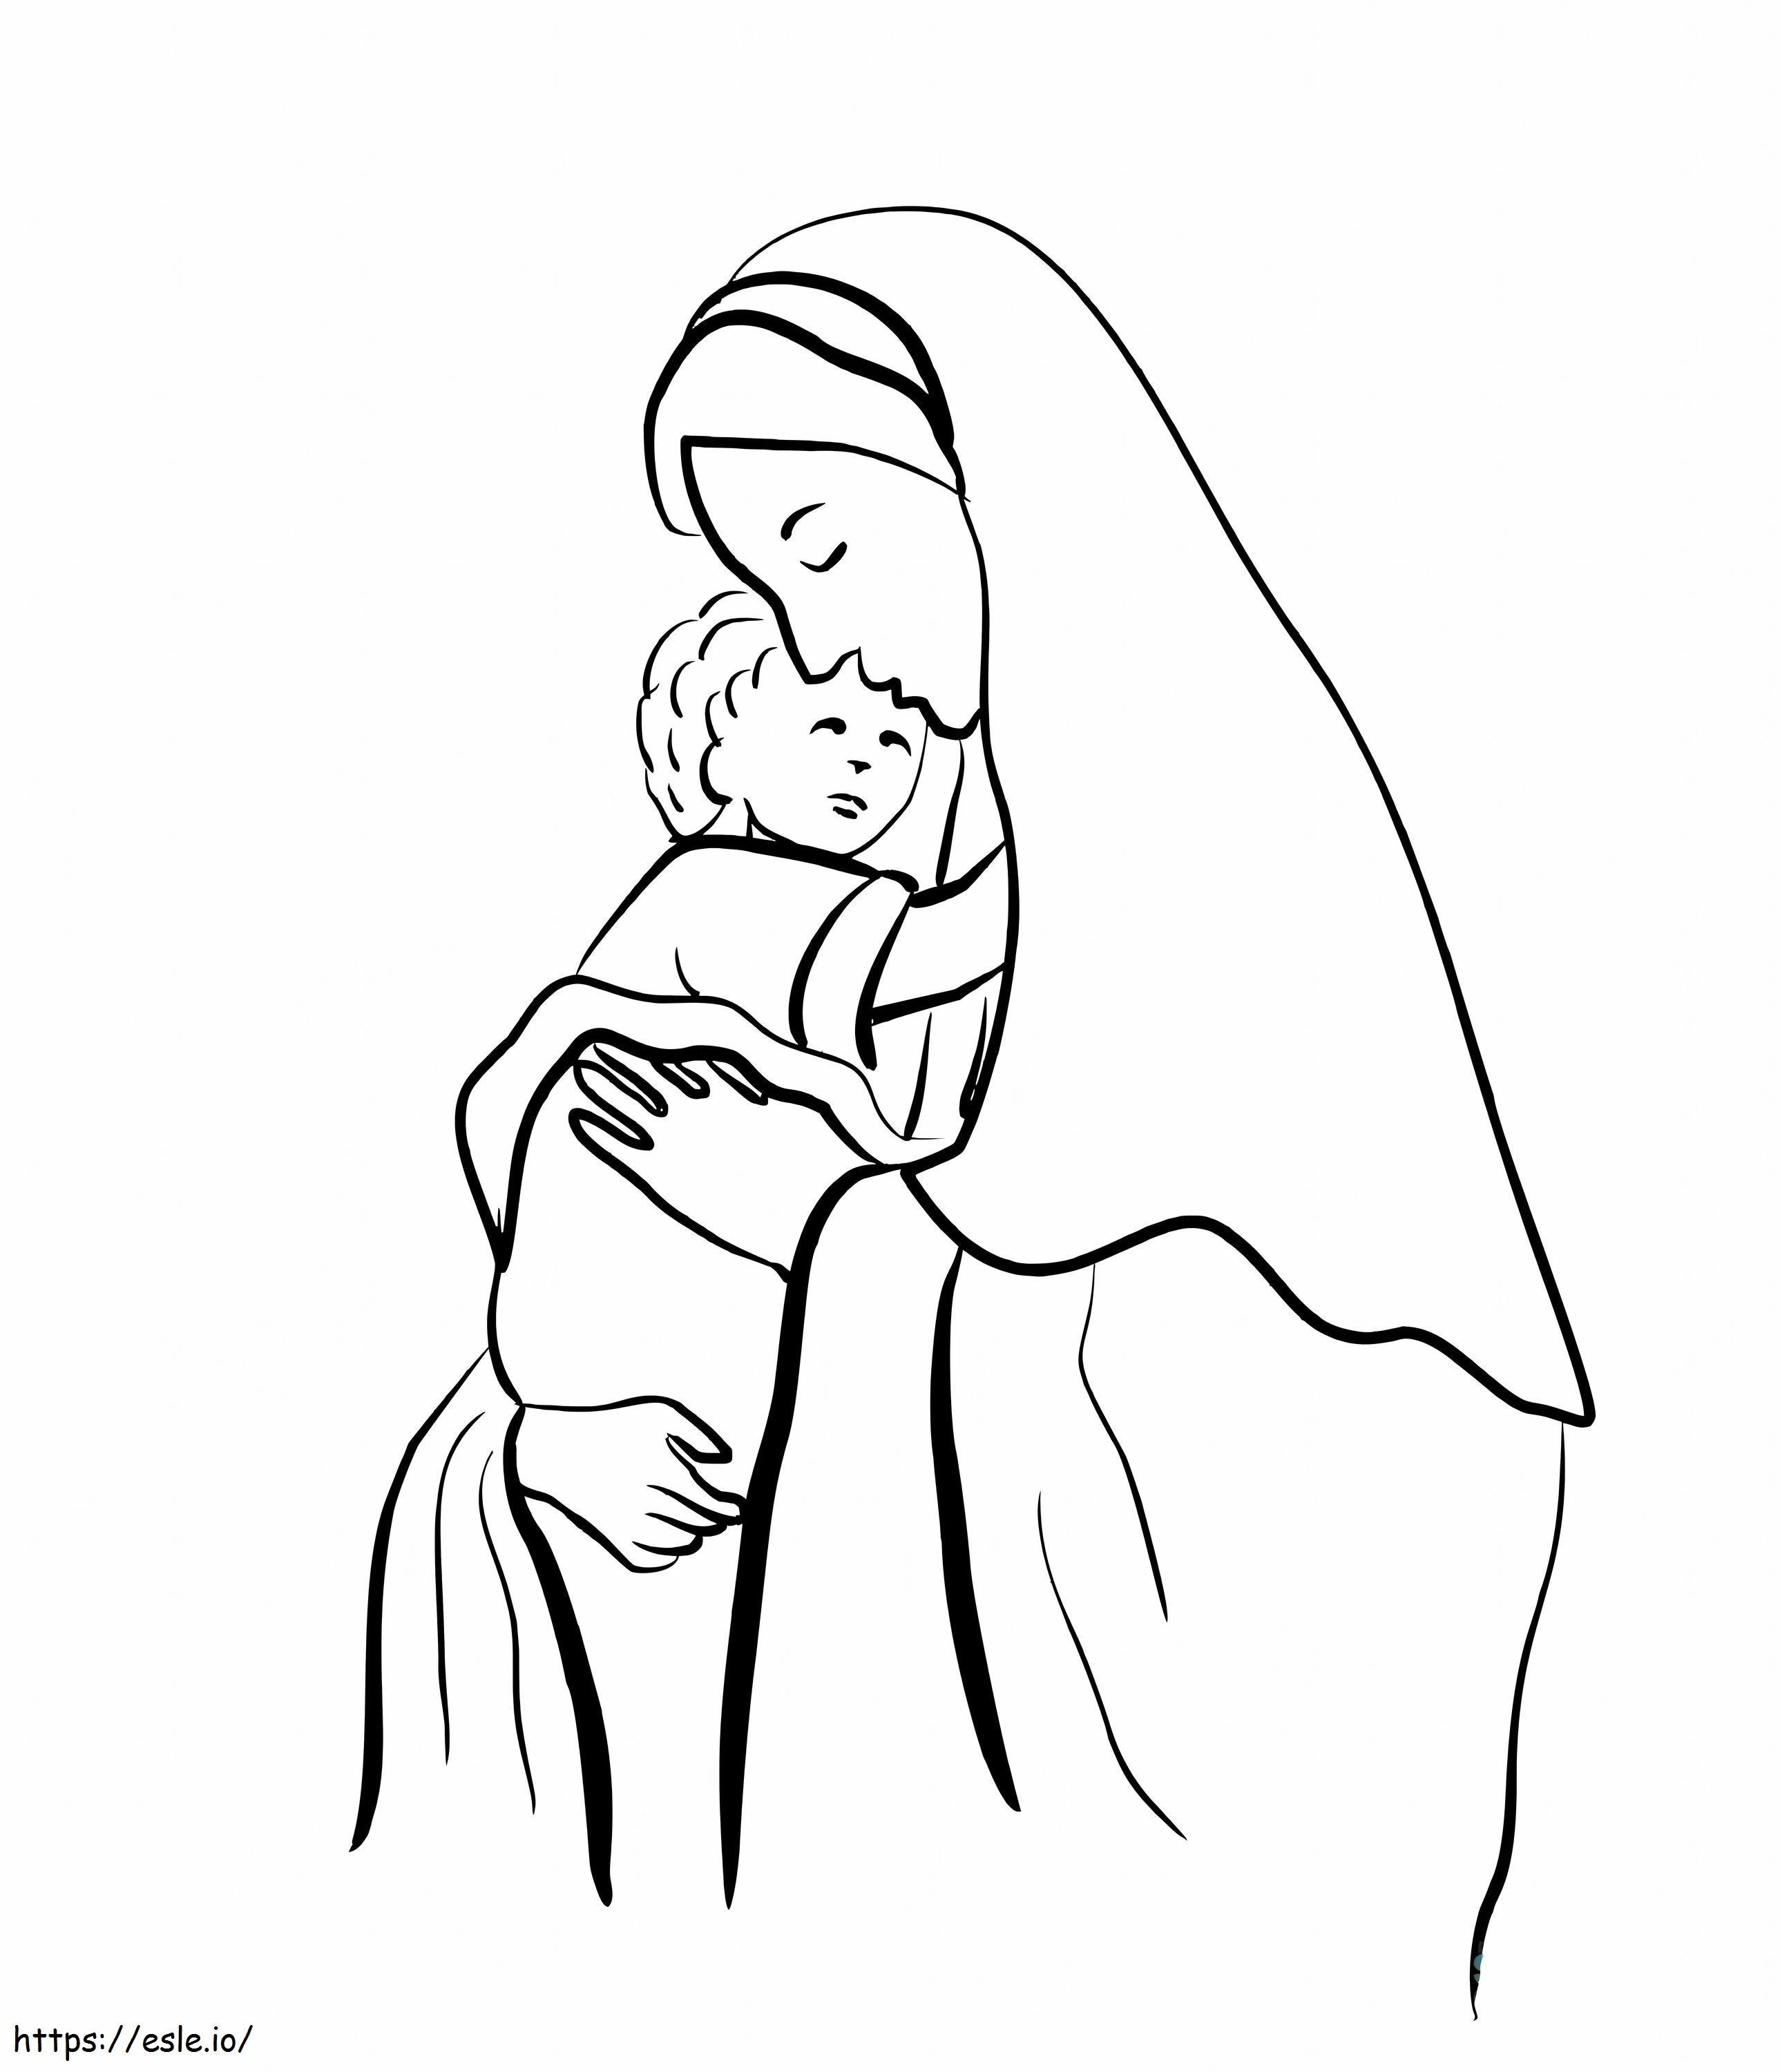 Wydrukuj Matkę Jezusa dla dzieci do pokolorowania kolorowanka